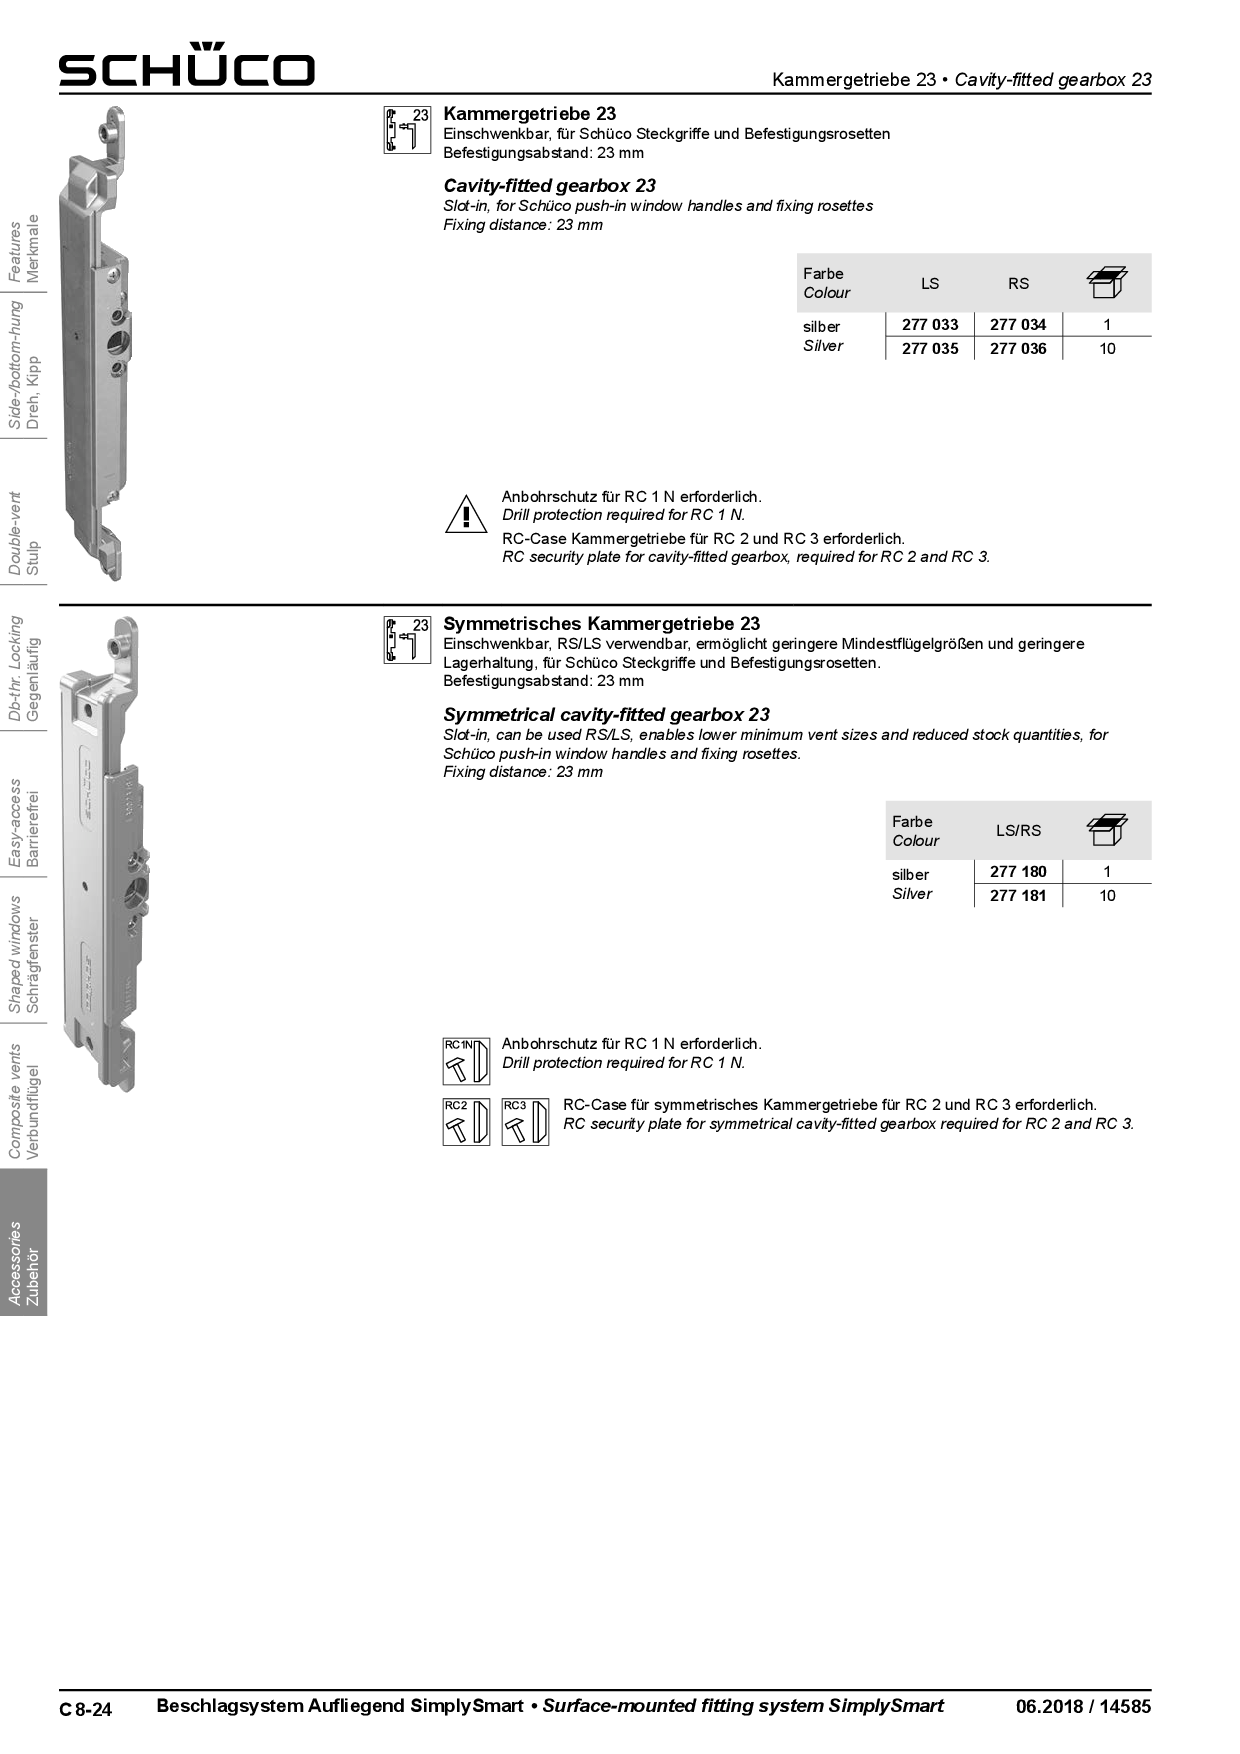 Schüco Kammergetriebe, asymmetrisch 23 mm DIN rechts 277034 / 277036